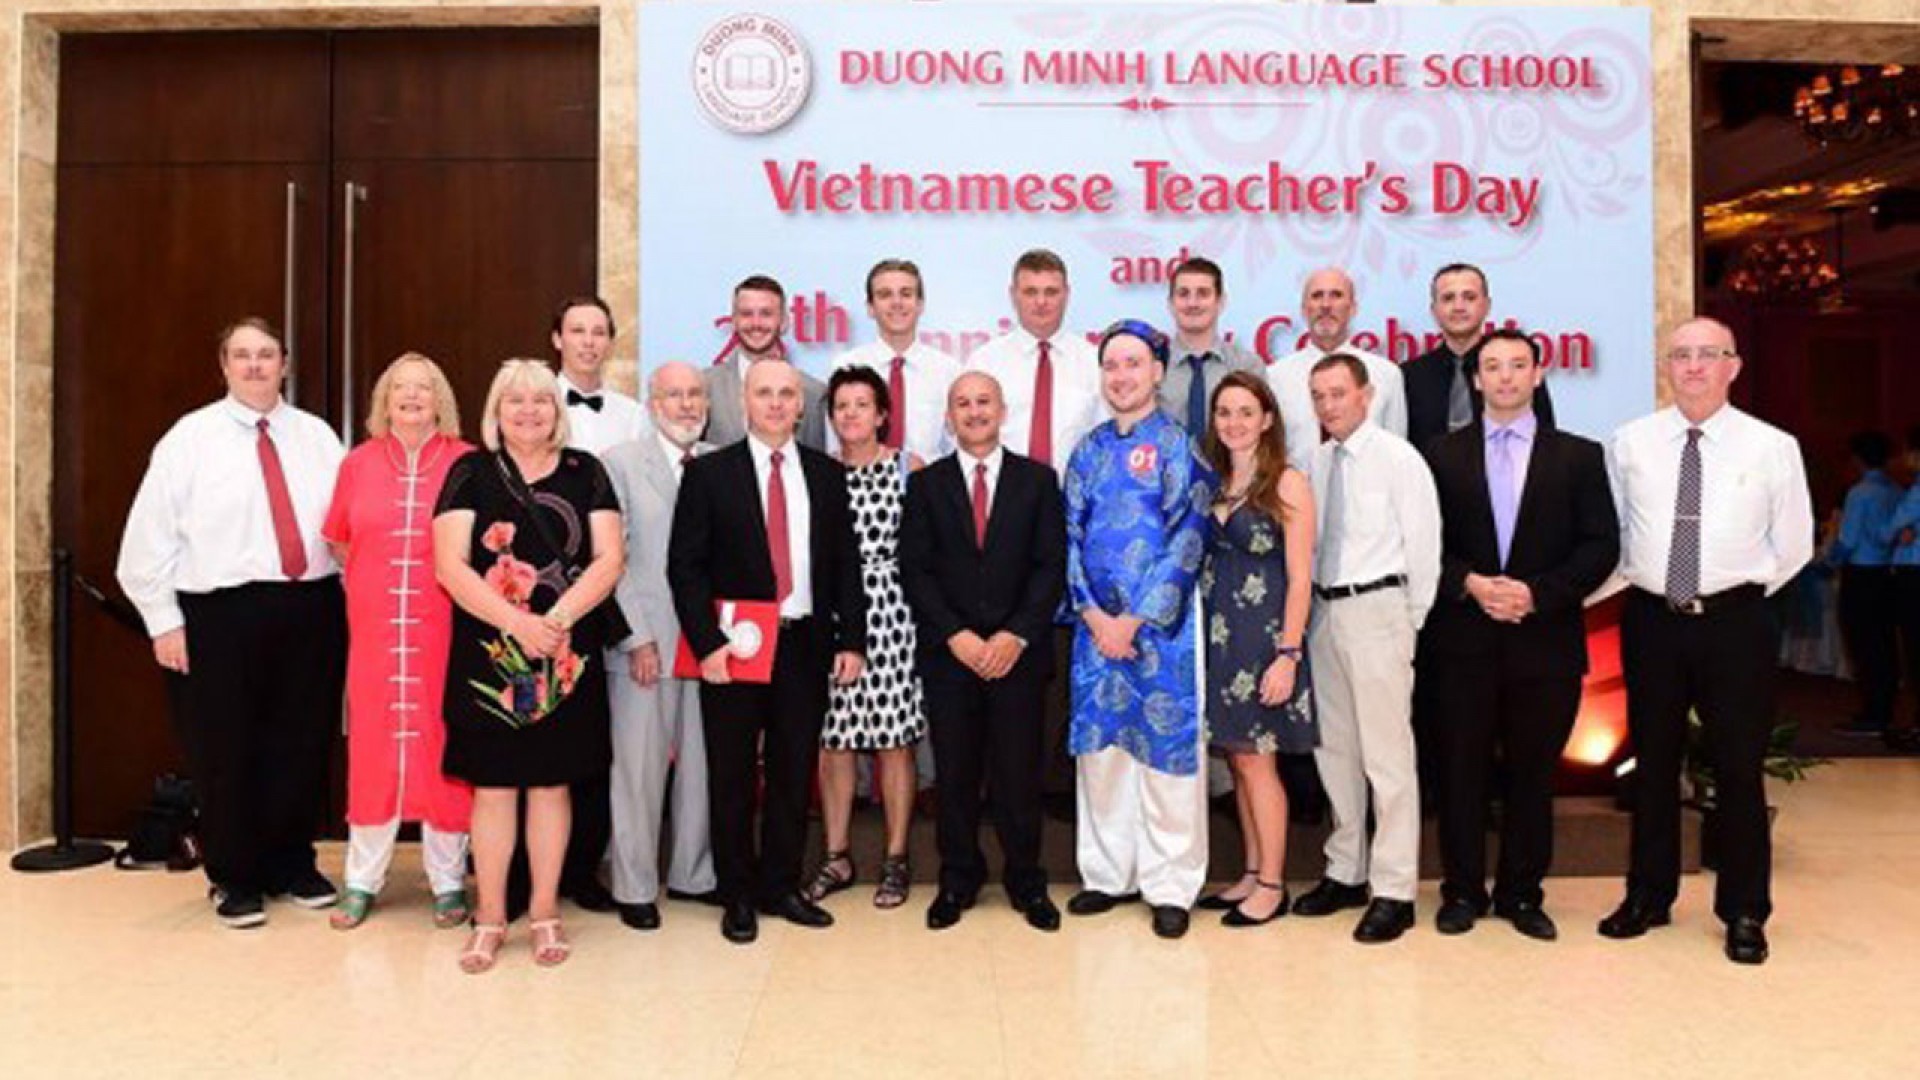 Đội ngũ giáo viên tại ngoại ngữ Dương Minh có thật sự tốt như lời đồn?